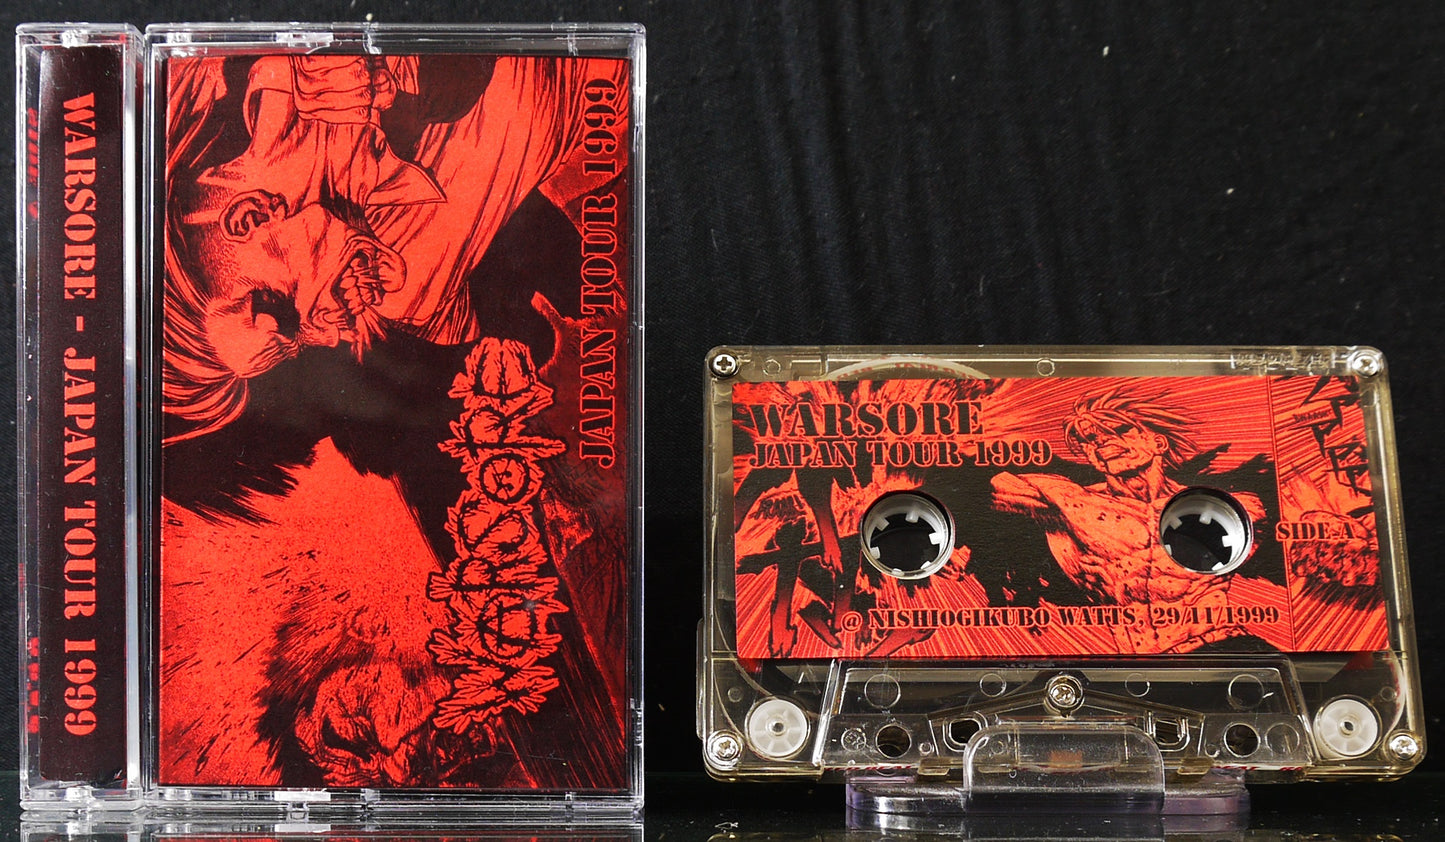 WARSORE - Japan Tour 1999 MC Tape (Bootleg)